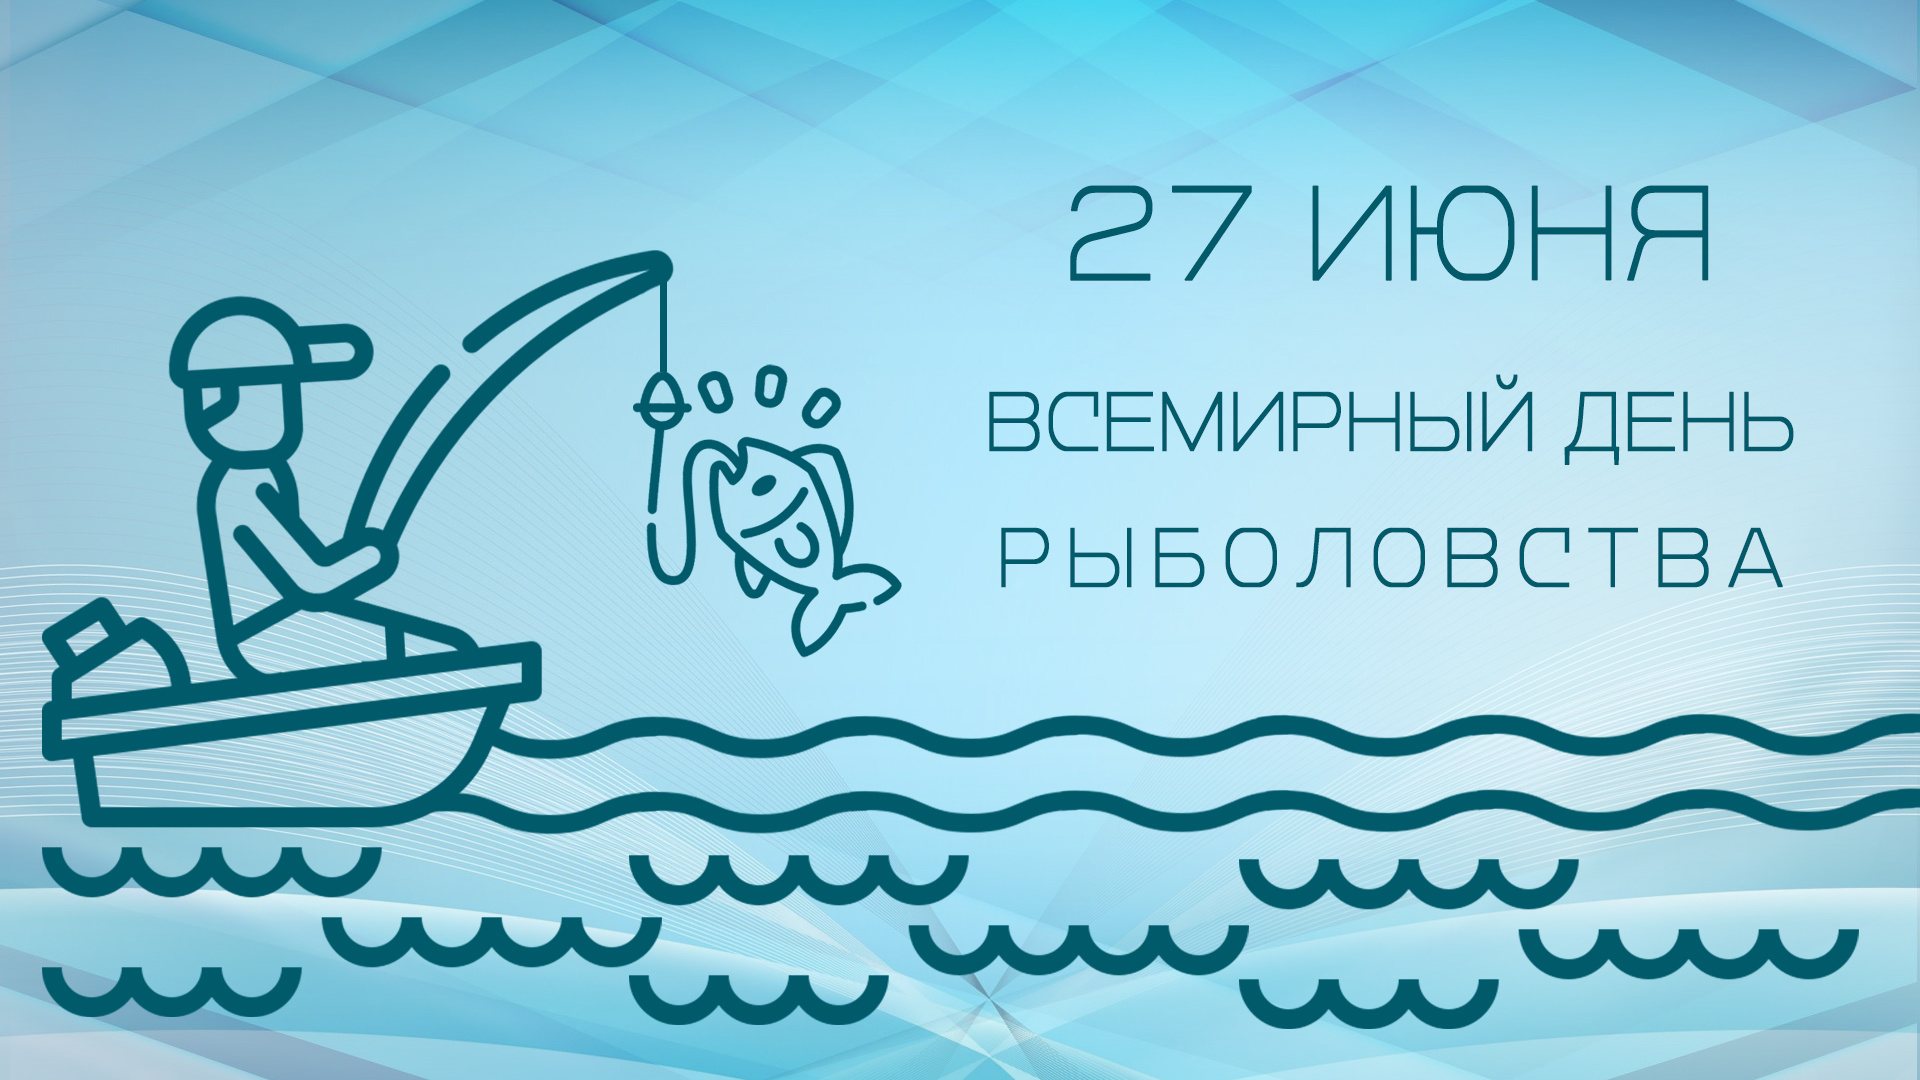 27 июнь 2019. Всемирный день рыболовства. Всемирный день рыболовства 27 июня. Всемирный день рыболовства 2022. Всемирный день рыбного промысла.